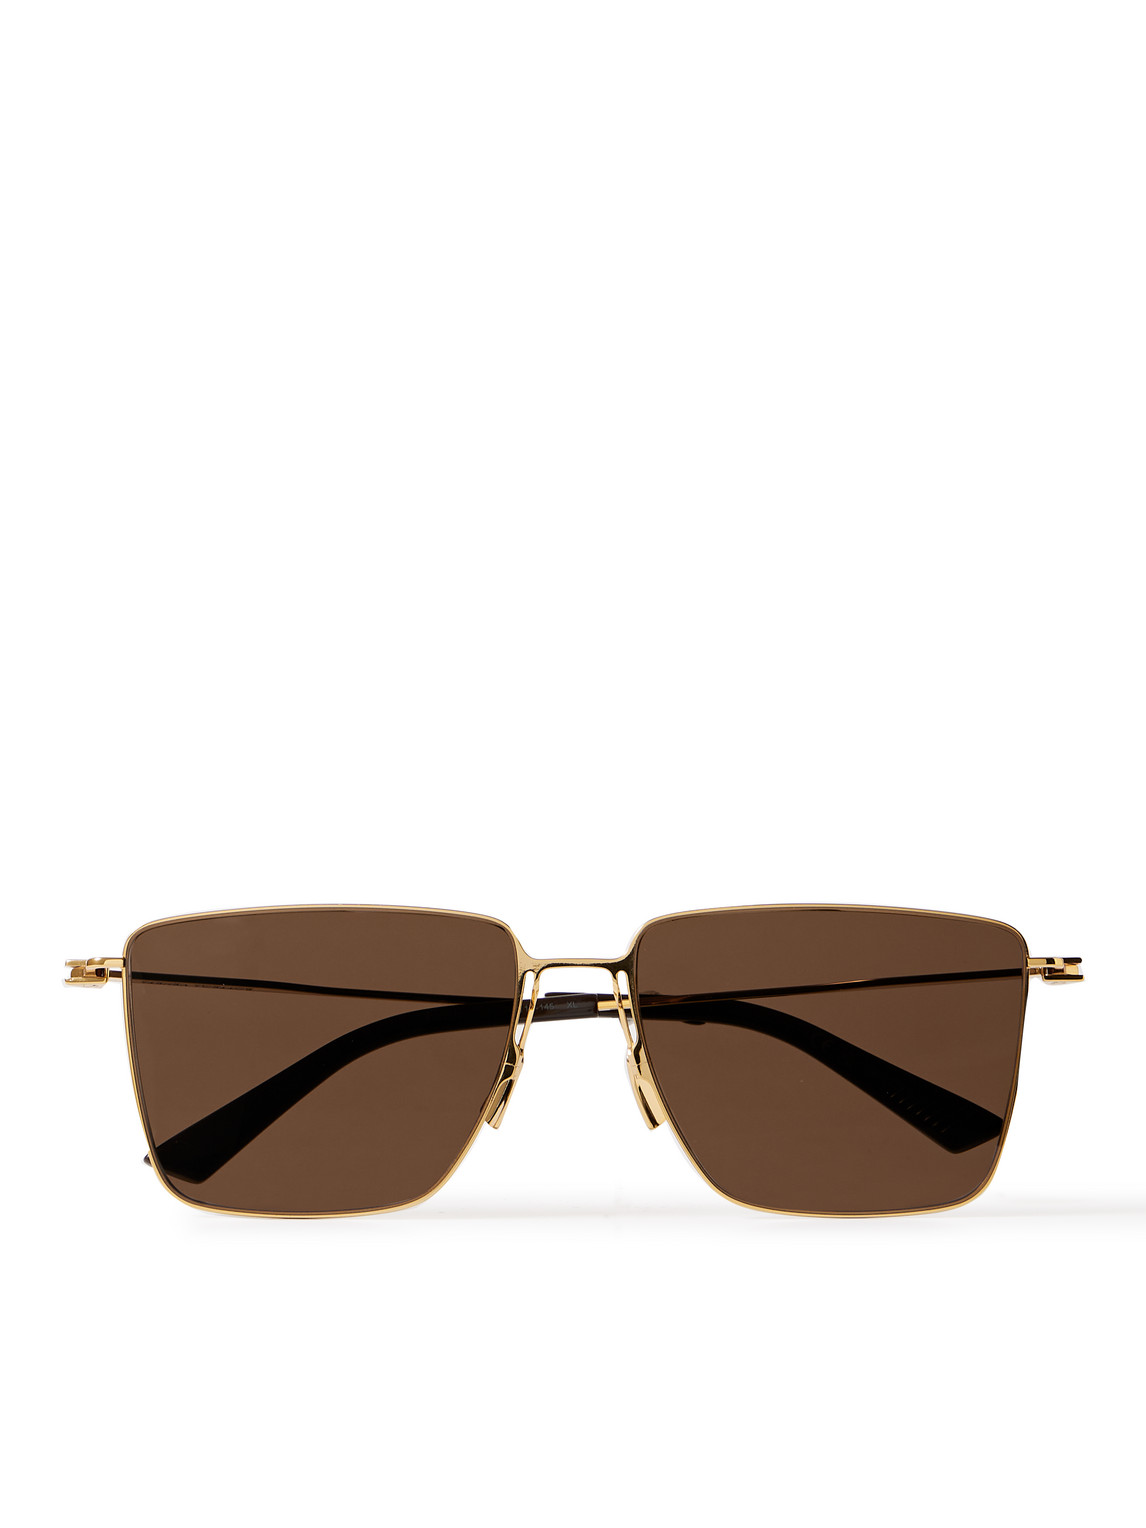 Bottega Veneta D-frame Gold-tone Sunglasses